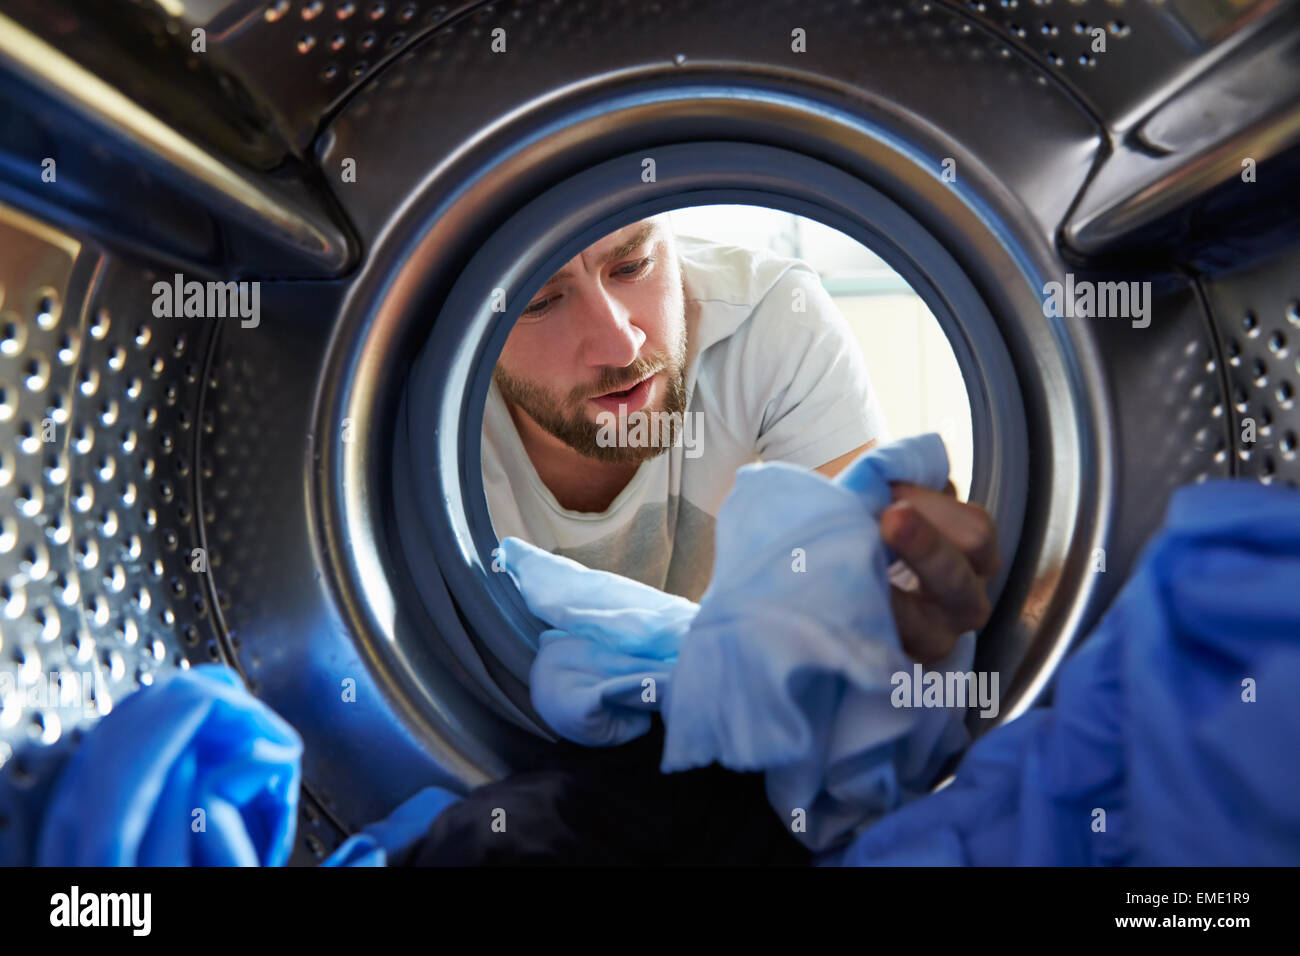 L'uomo accidentalmente la tintura di biancheria all'interno della macchina di lavaggio Foto Stock